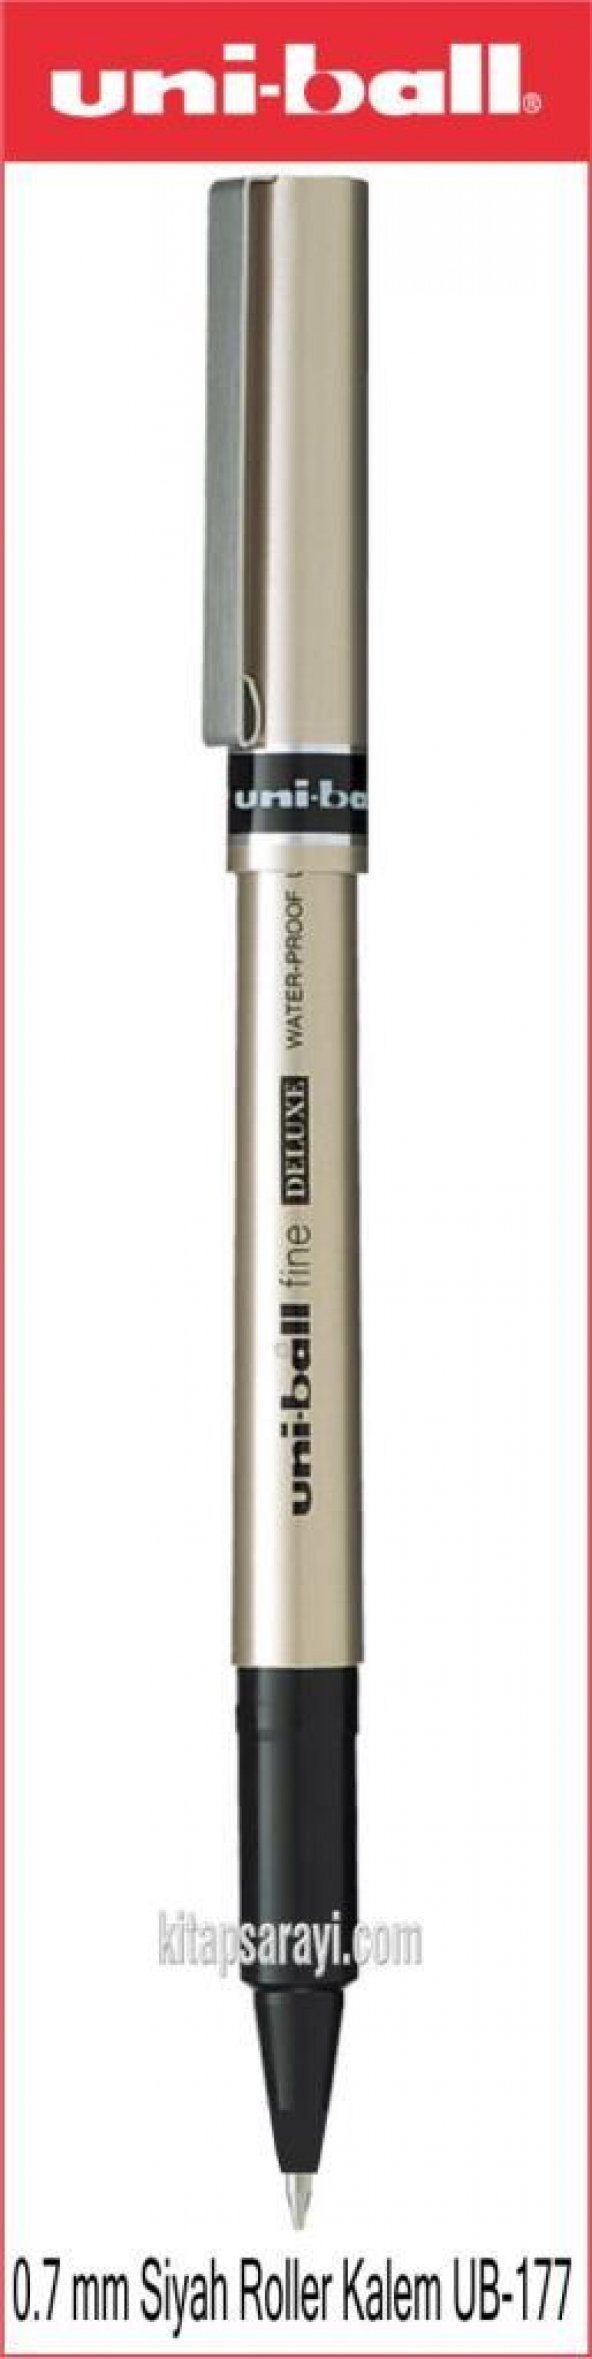 Uniball Deluxe 0.7 mm Siyah İmza Kalemi UB-178